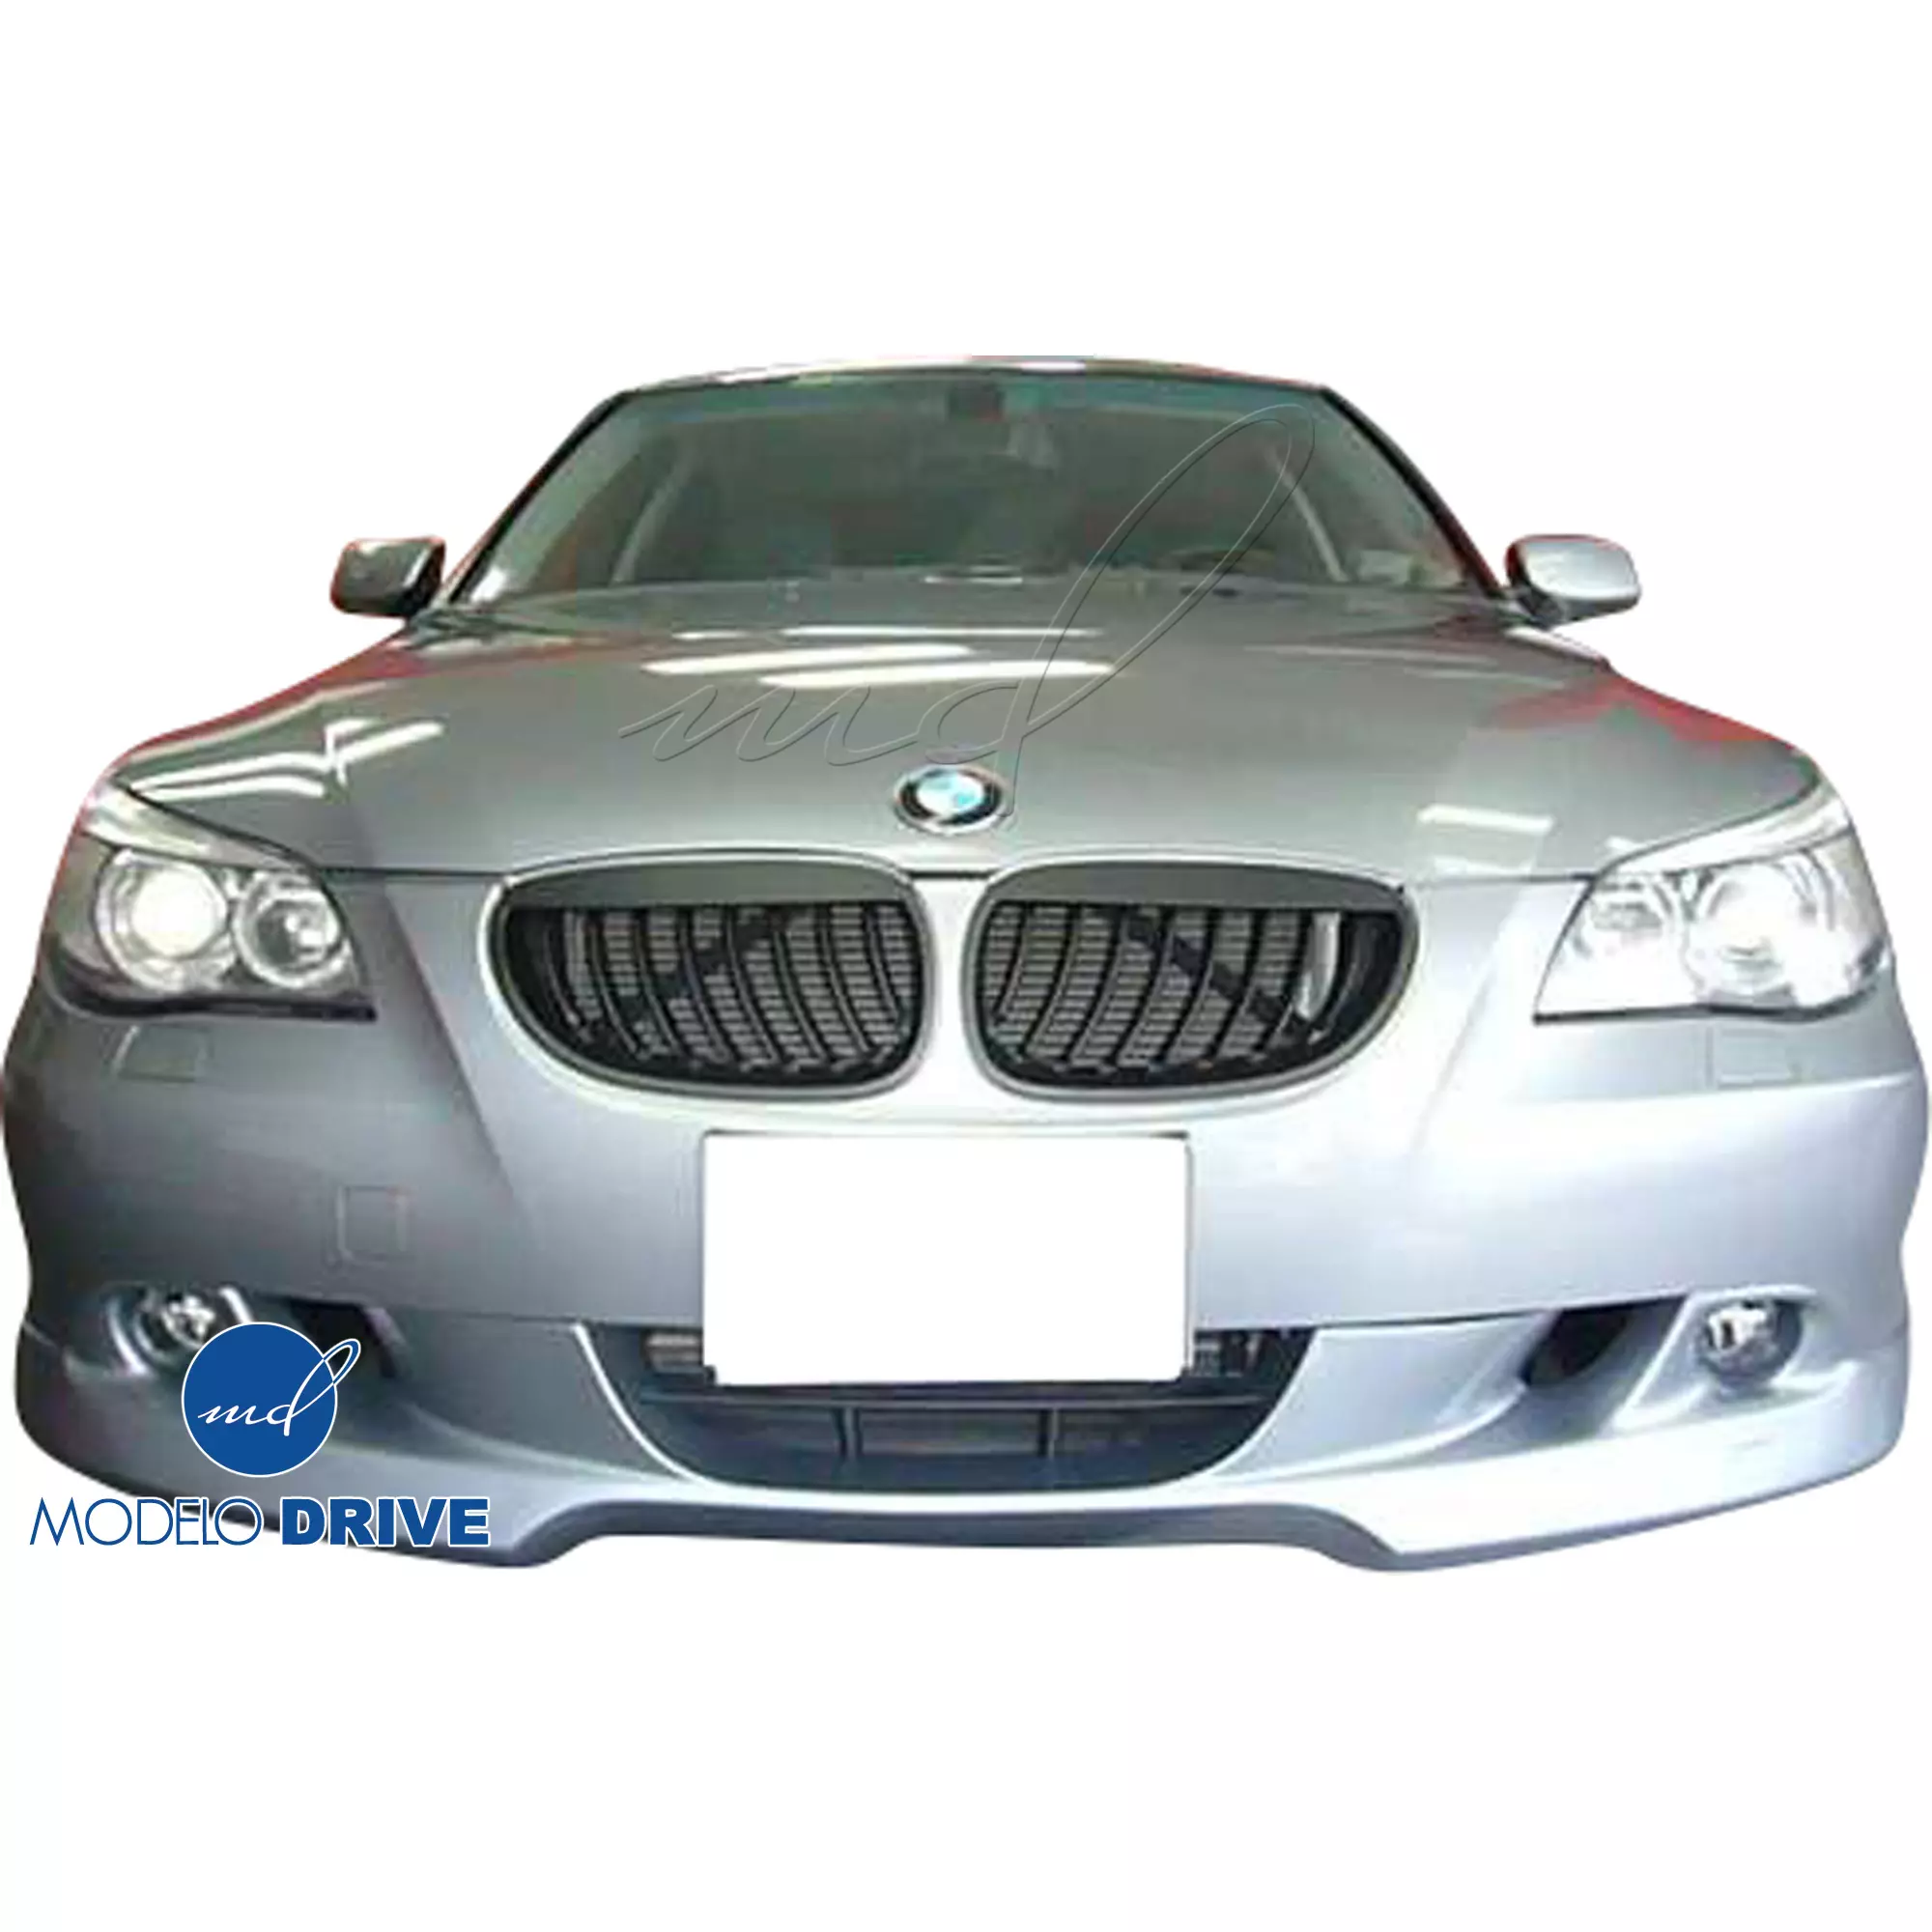 ModeloDrive FRP ASCH Body Kit 4pc > BMW 5-Series E60 2004-2010 > 4dr - Image 4